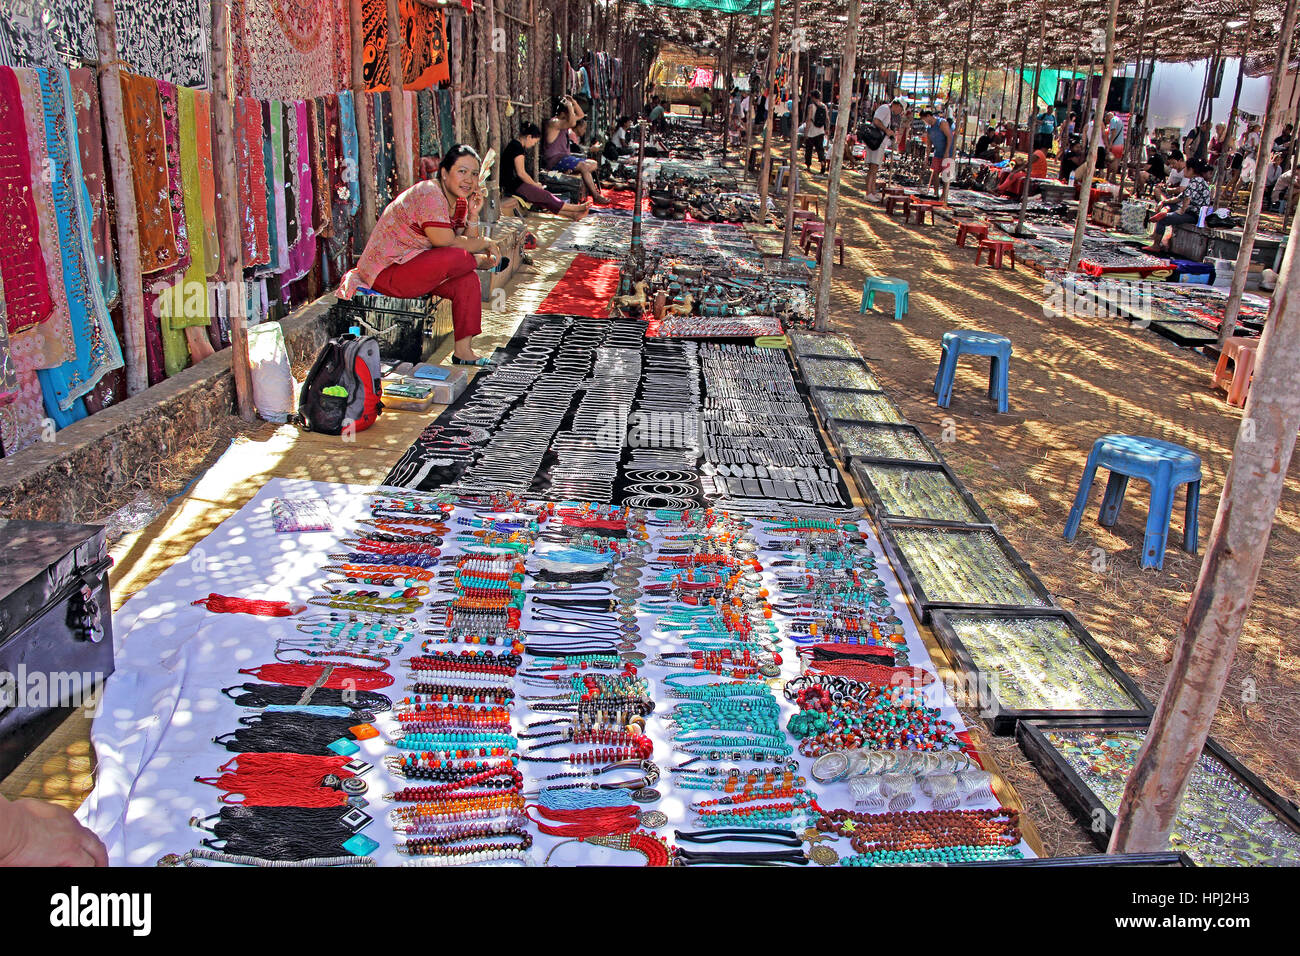 Plage d'Anjuna, plage de Goa, Inde - Boutiques et clients au marché aux puces mercredi la vente de variétés de marchandises. Seulement pour la rédaction Banque D'Images